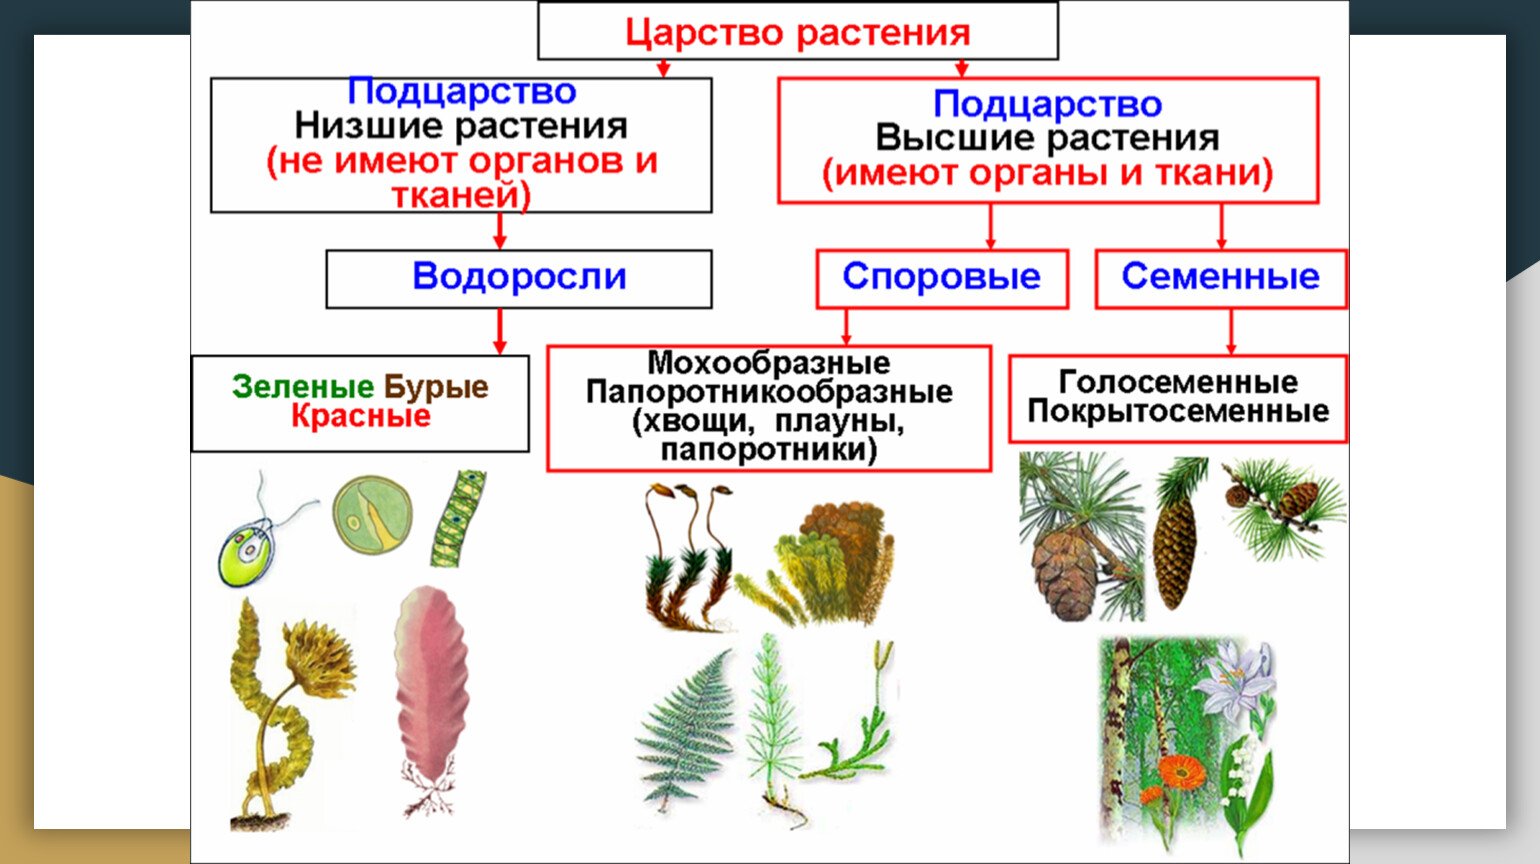 Низшие растения это в биологии